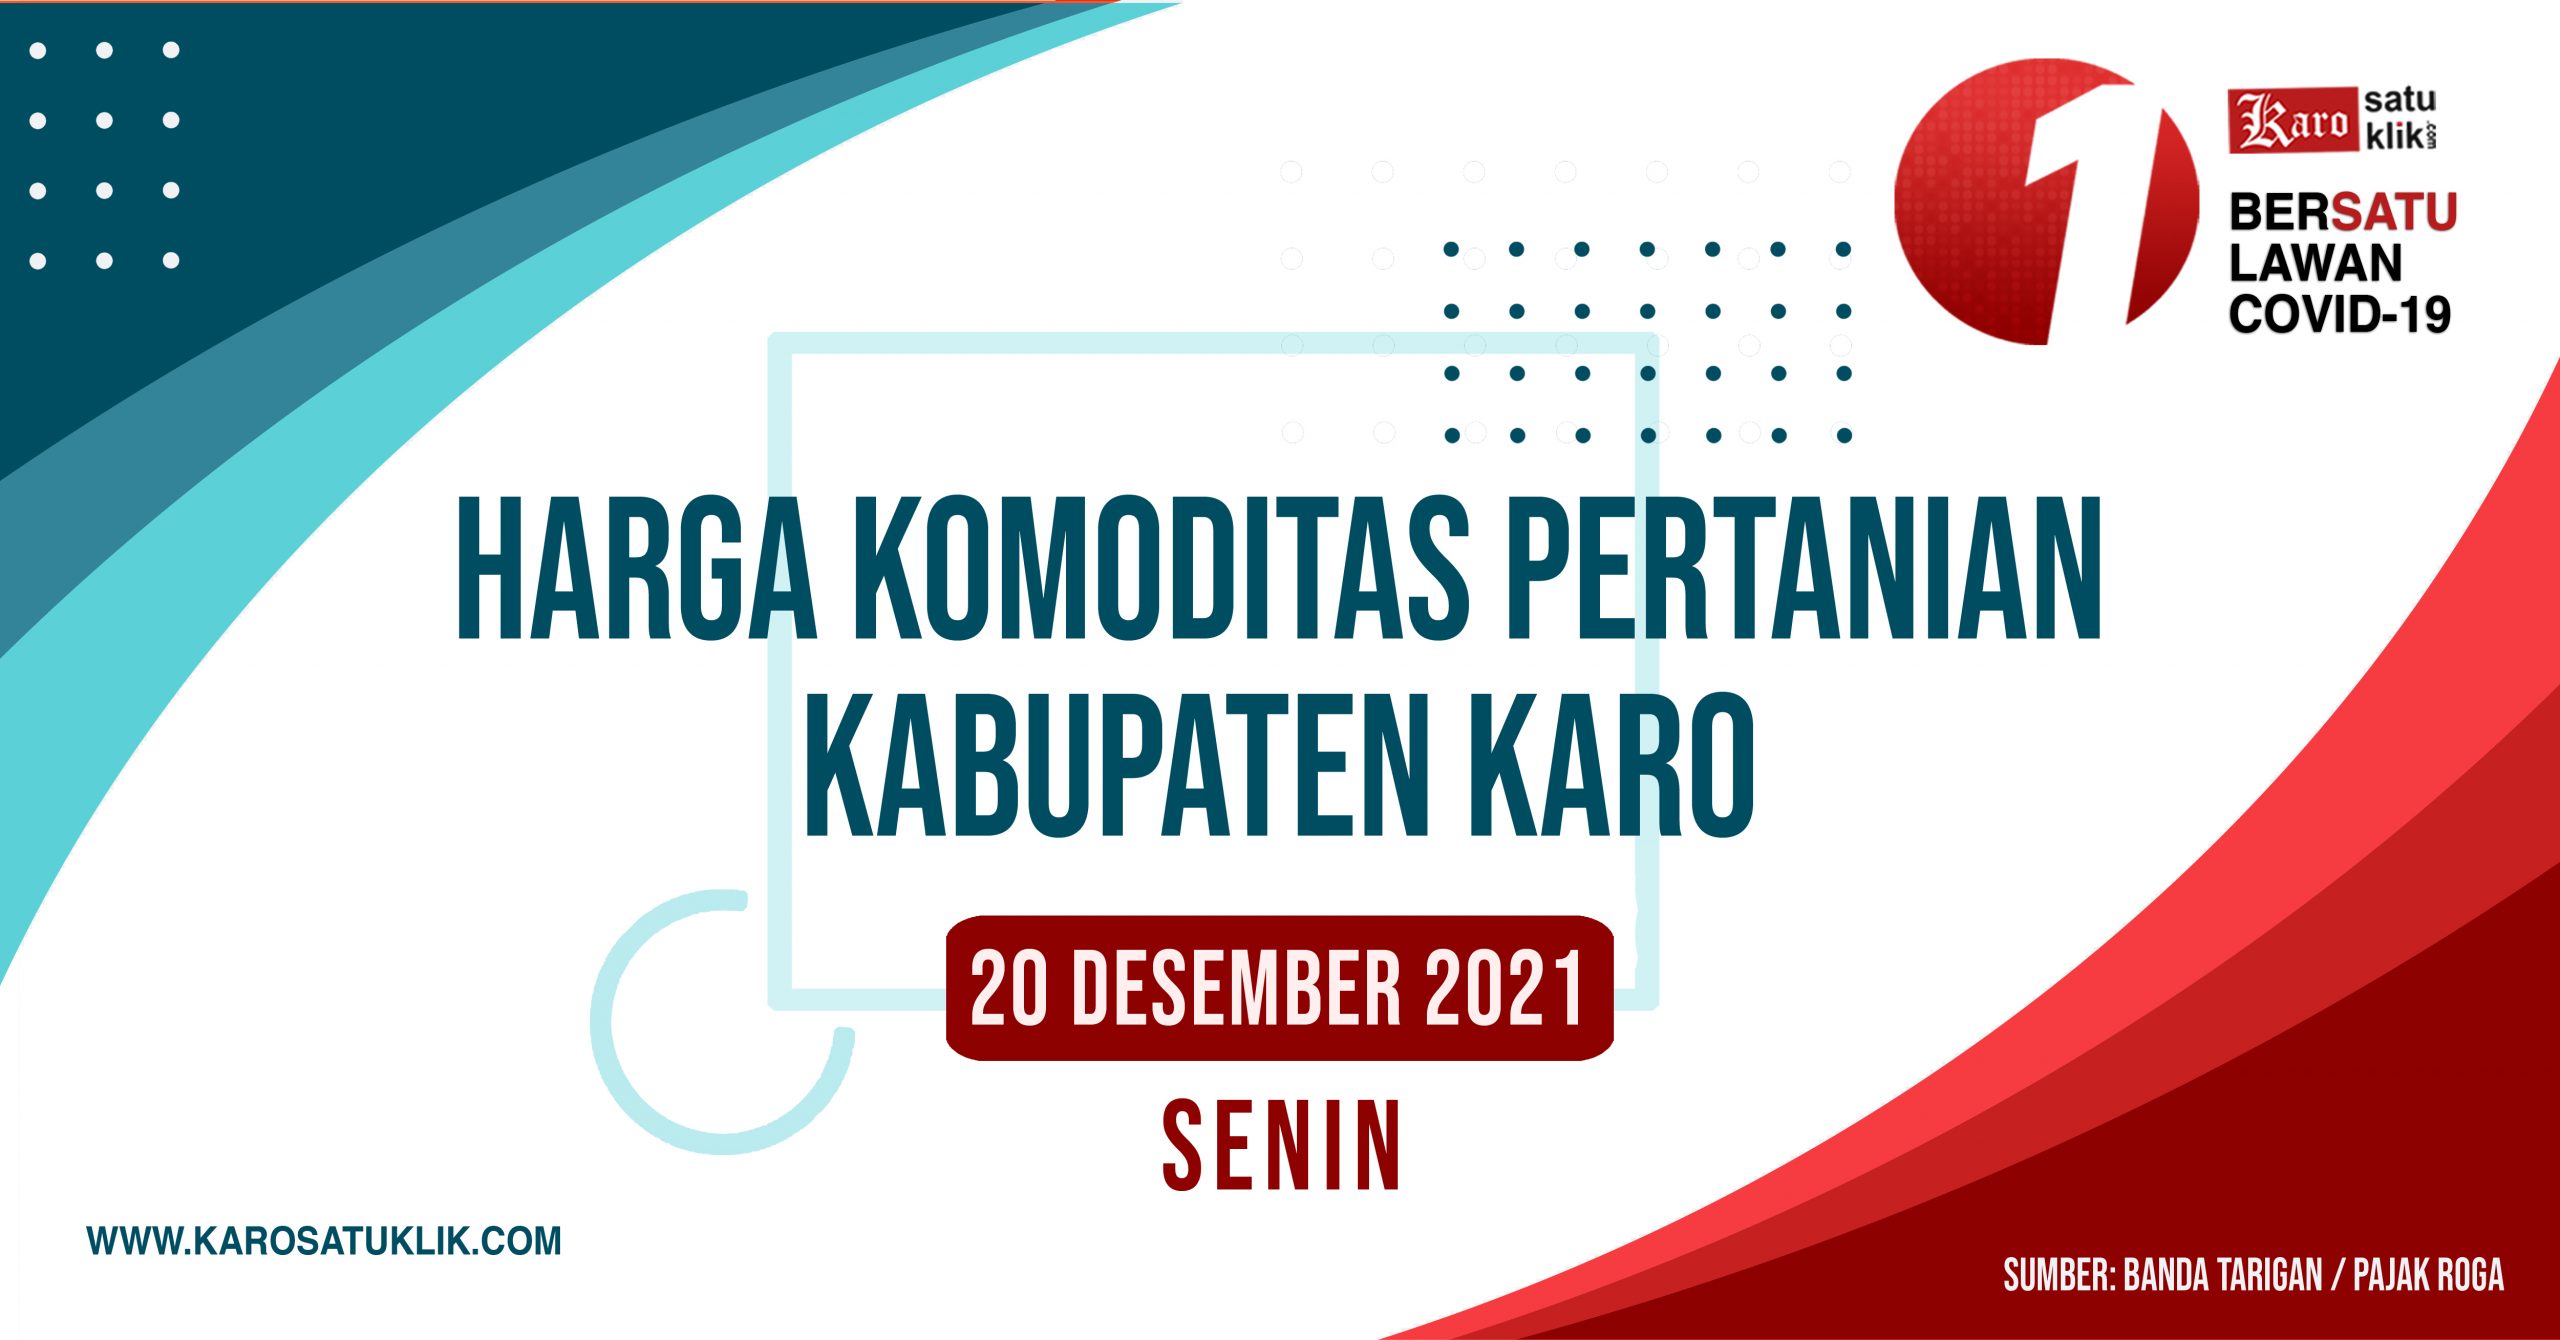 Daftar Harga Komoditas Pertanian Kabupaten Karo, 20 Desember 2021